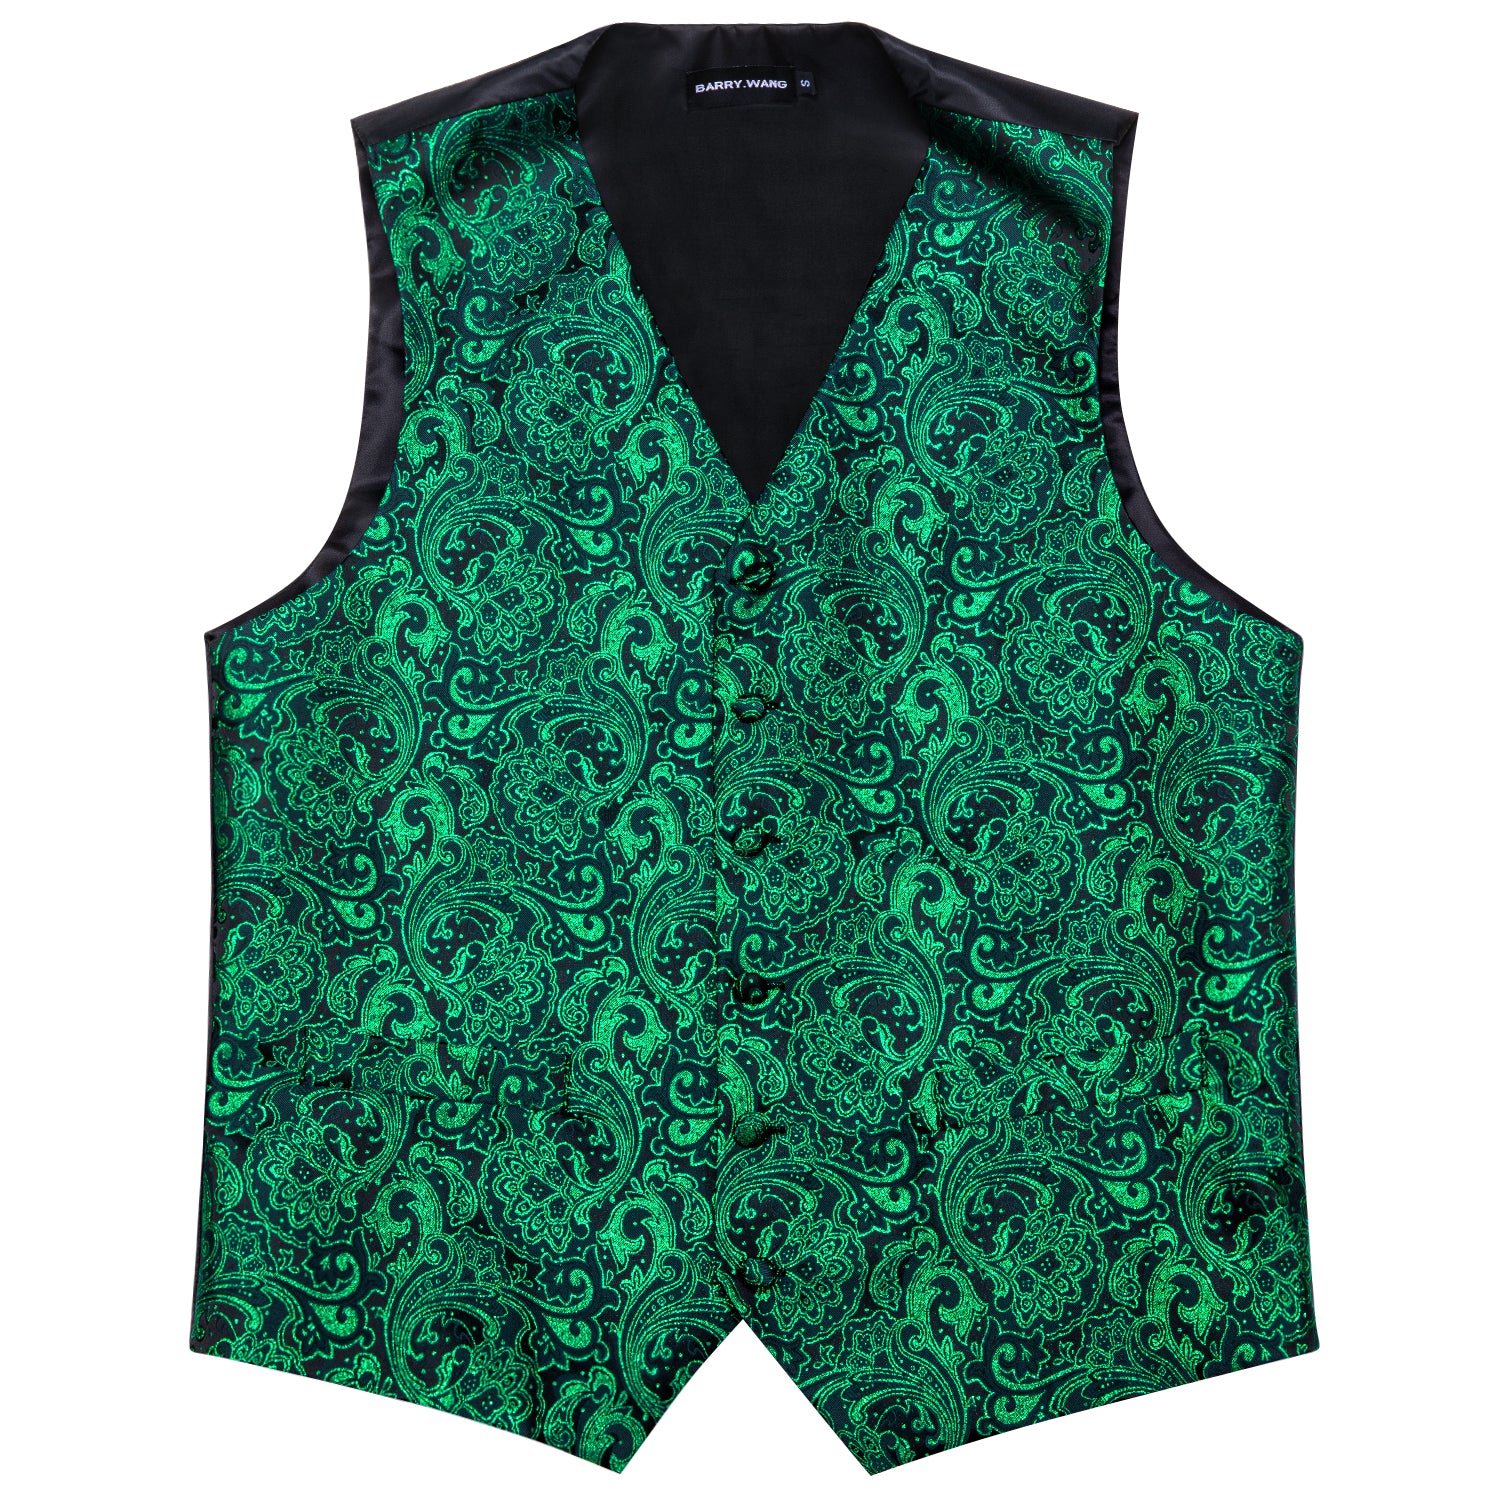 Shining Men's Green Paisley Silk Vest Bowtie Pocket square Cufflinks